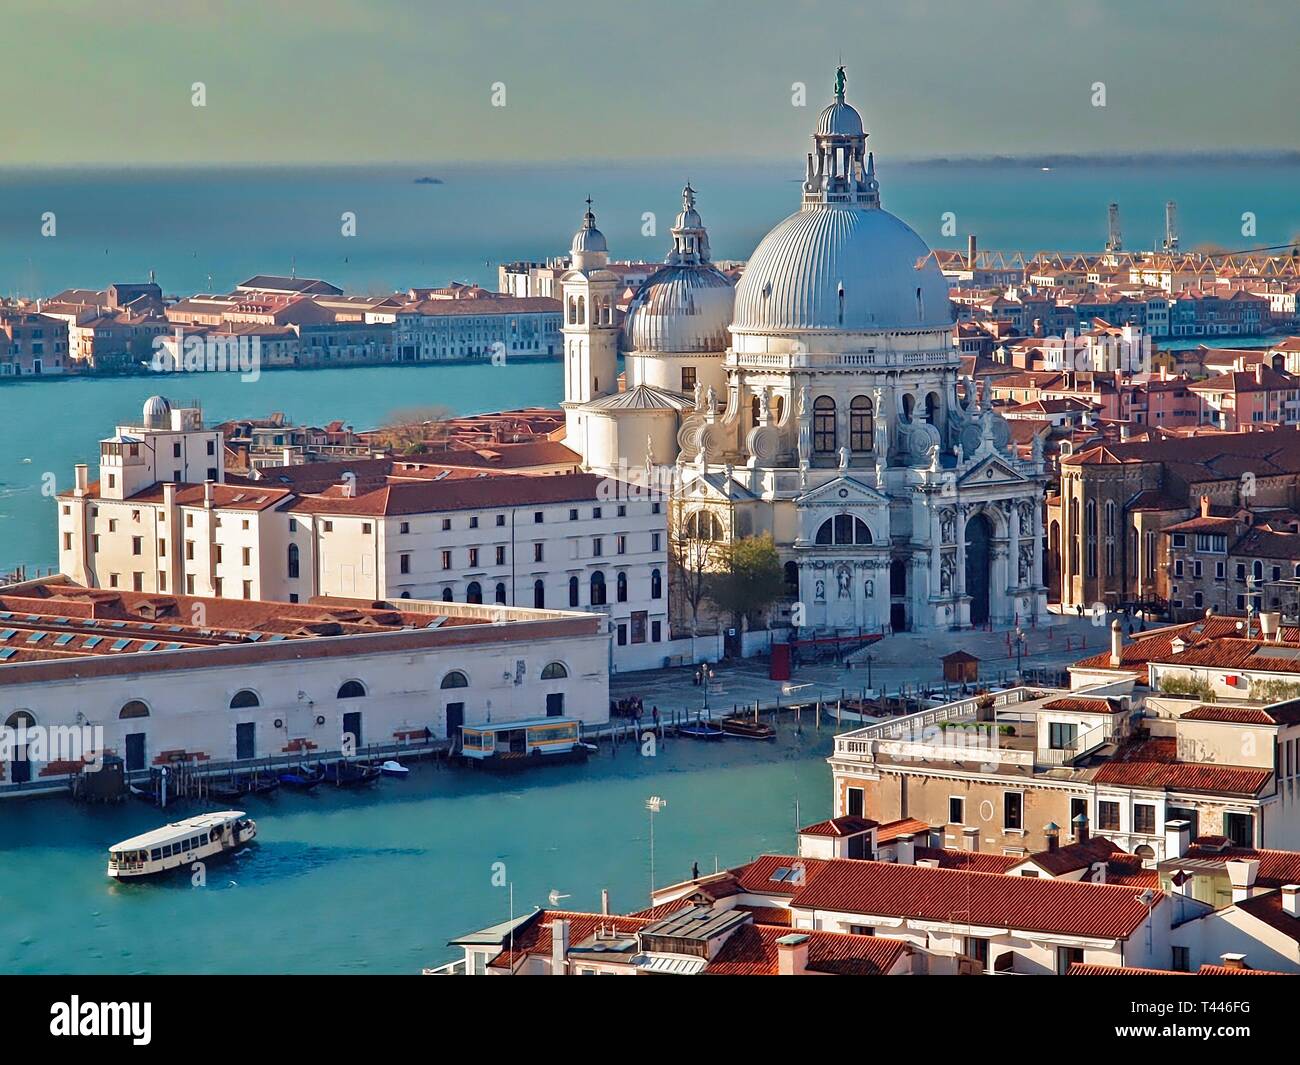 Aerial view of Santa Maria della Salute in Venice in Italy Stock Photo